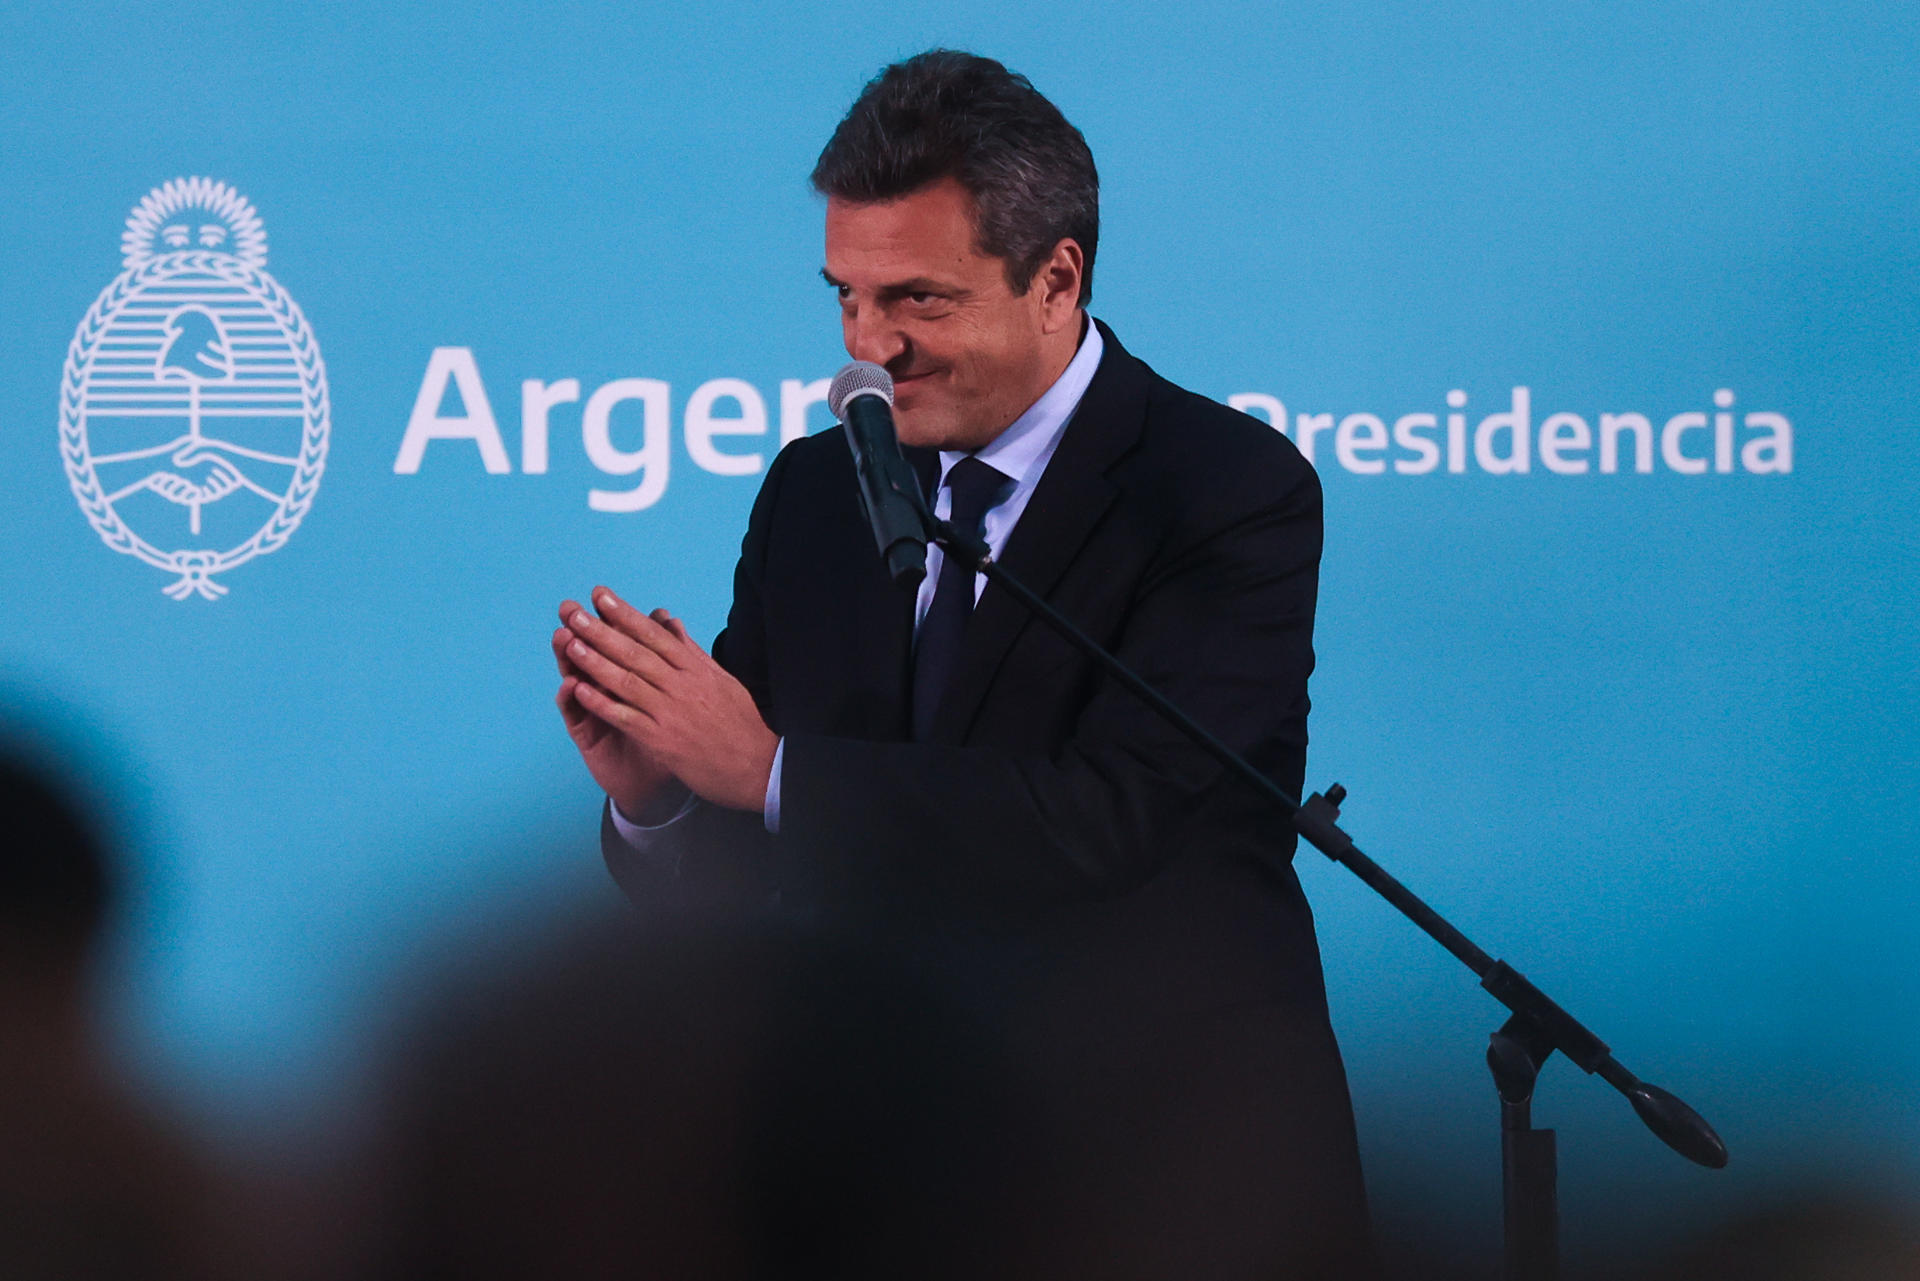 Foto de archivo de Sergio Massa, ministro de Economía de Argentina. EFE/Juan Ignacio Roncoroni